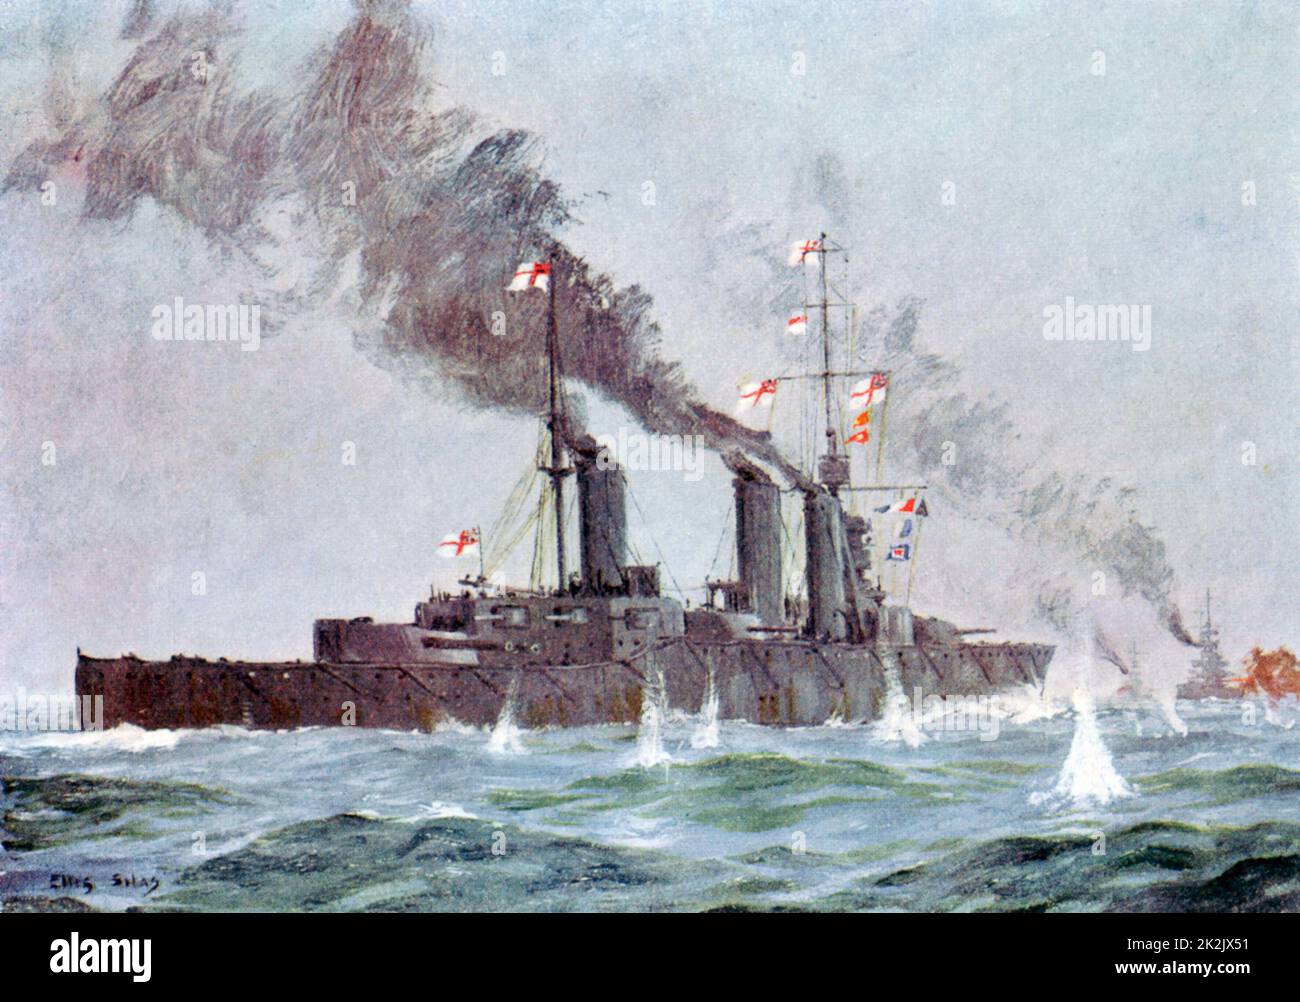 La Batalla de Jutlandia el 31 de mayo - 1 de junio de 1916 (también llamada Batalla de Skagerrak) flota británica bajo Jellicoe serrar flotas alemana bajo Scheer, pero la batalla no está completamente unido. Crucero de batalla HMS 'León' que entran en acción. Foto de stock